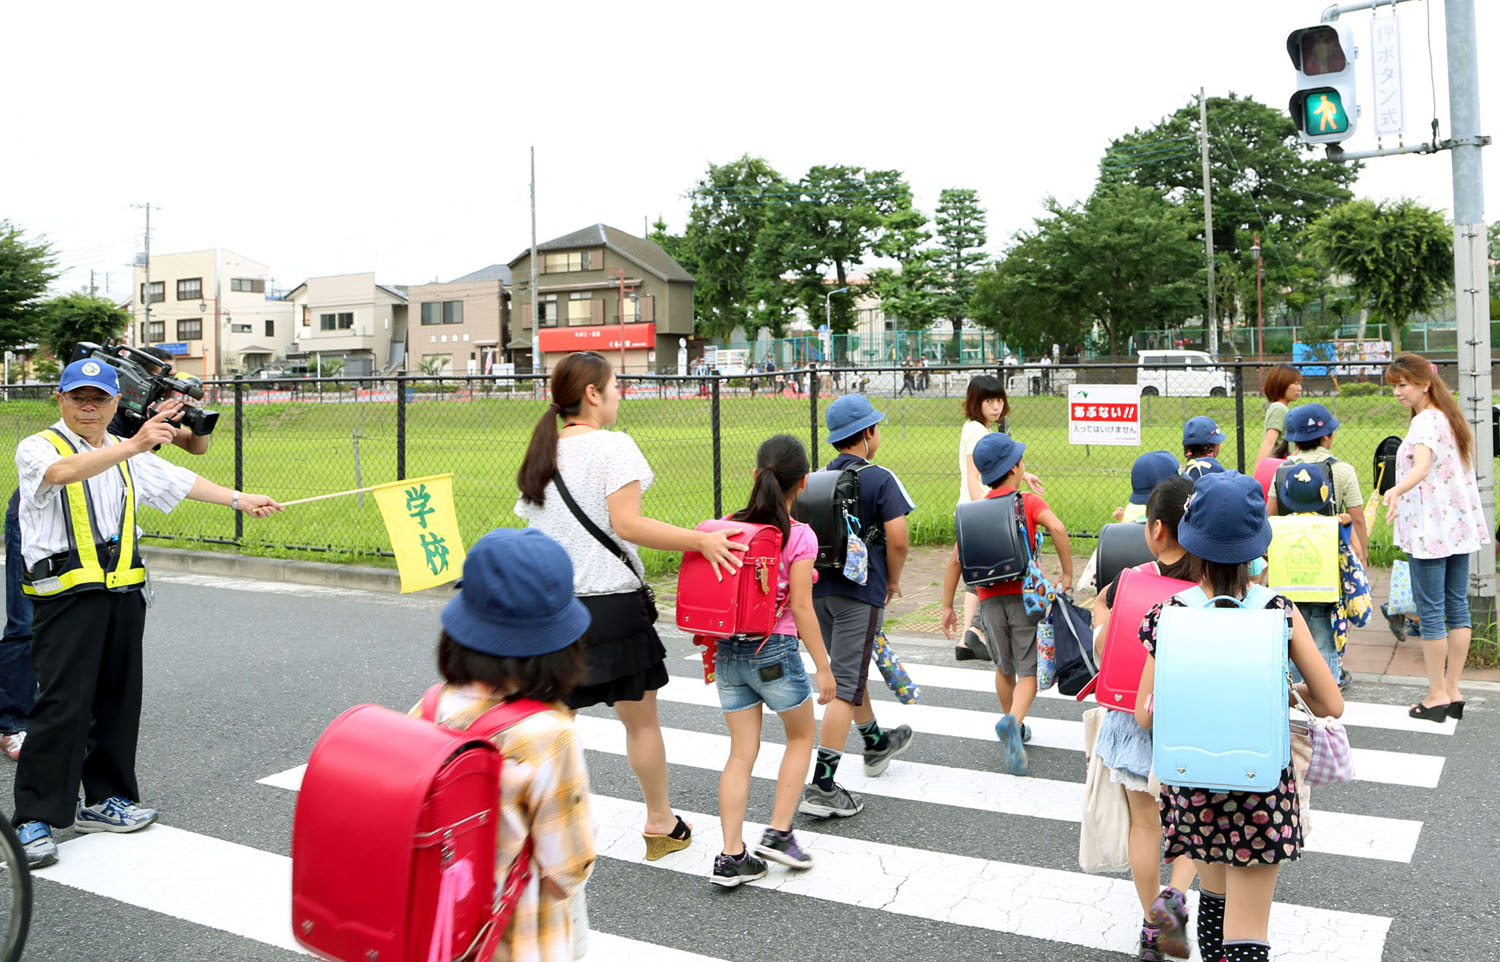 10 nguyên tắc cha mẹ Nhật dạy con được cả thế giới chia sẻ, áp dụng với mọi lứa tuổi đều hiệu quả - Ảnh 1.